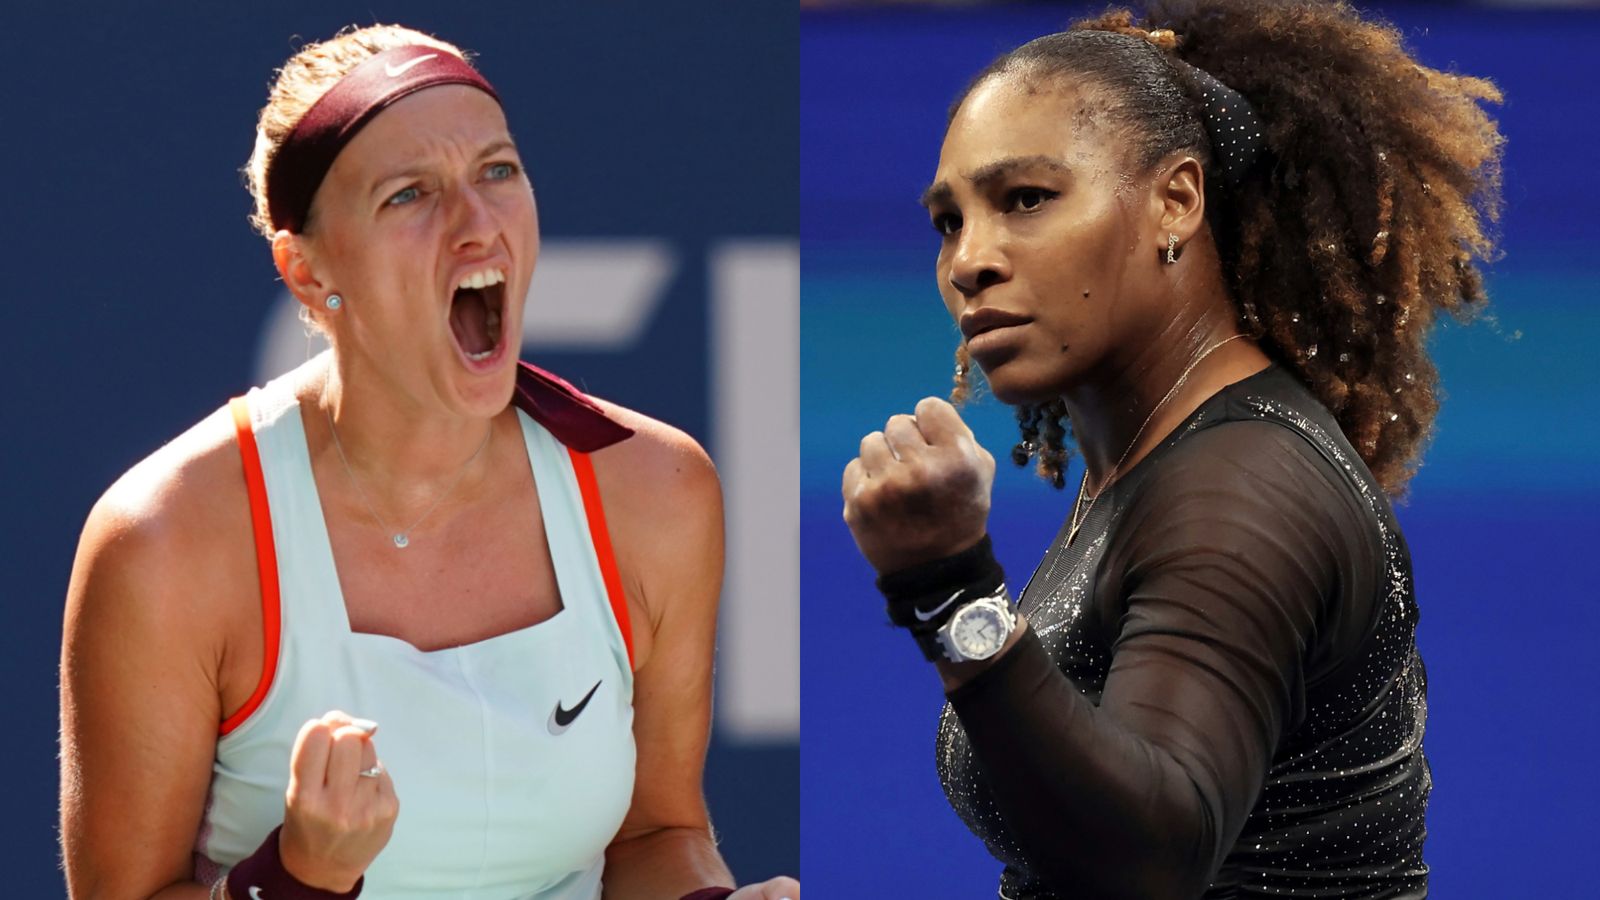 US Open: Petra Kvitova inspirada por Serena Williams tras salvar un punto de partido;  Iga Swiatek a través después de la intimidación |  noticias de tenis